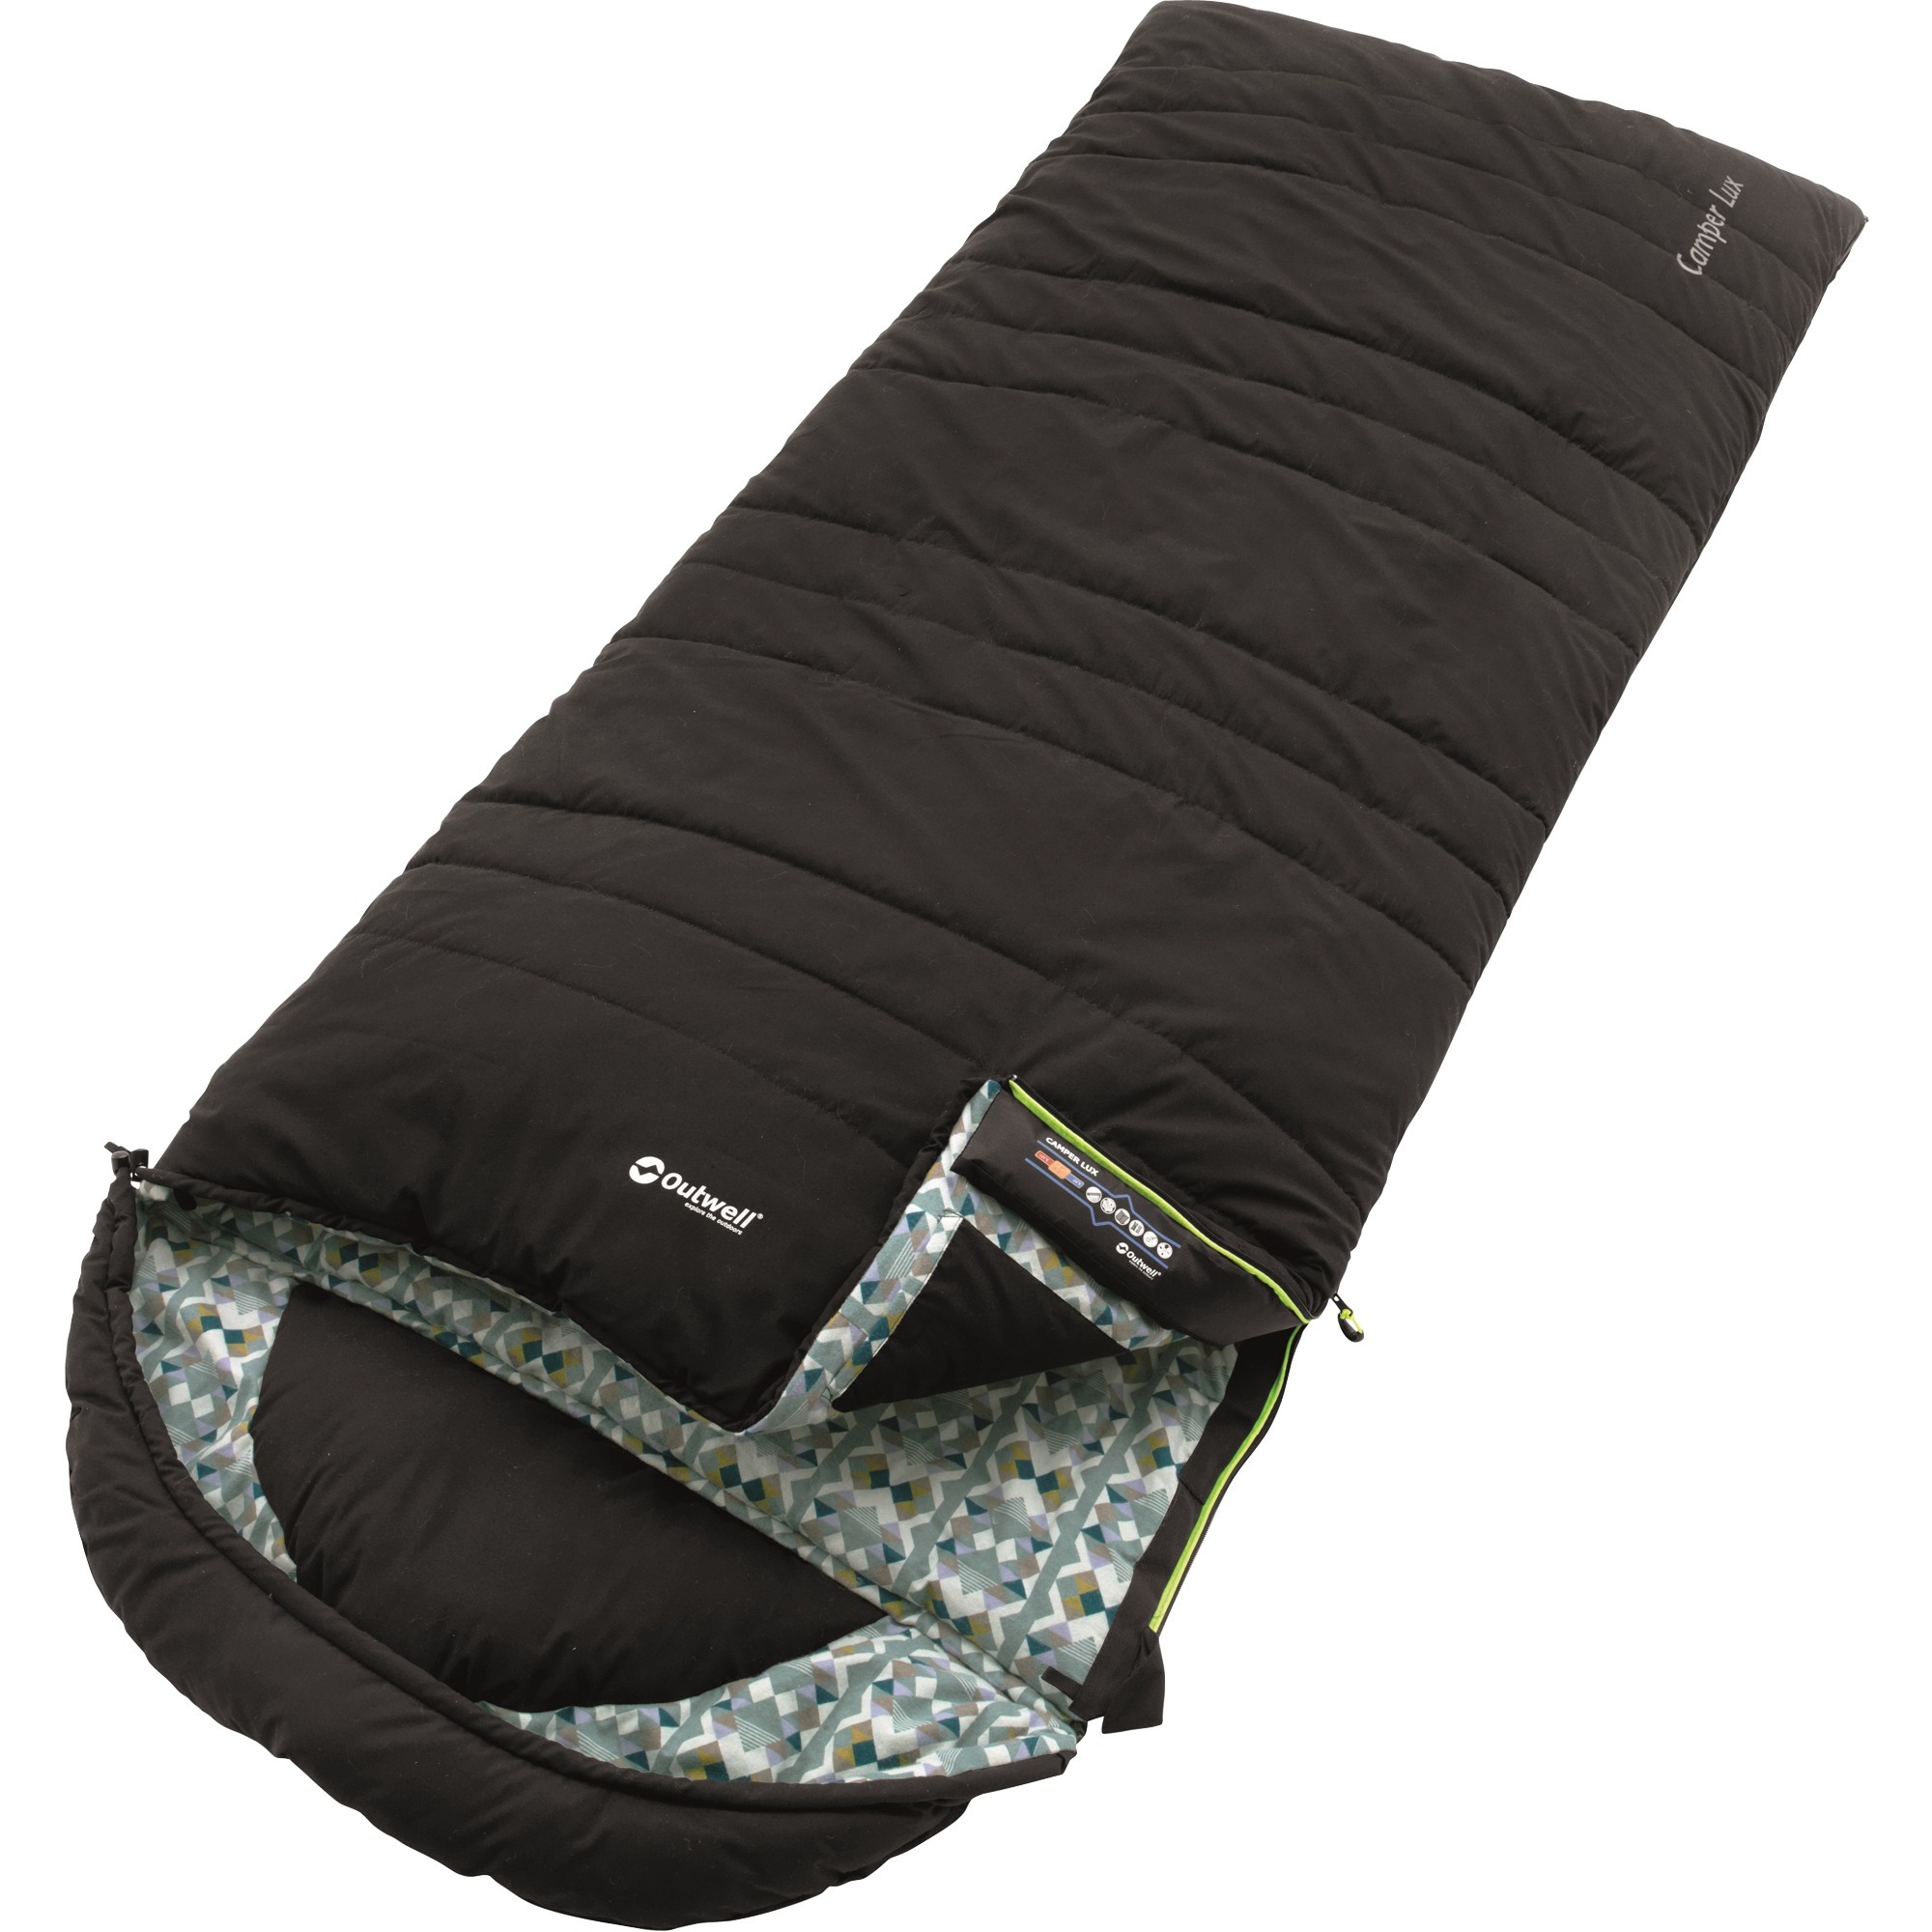 Camper Lux, Sleeping bag